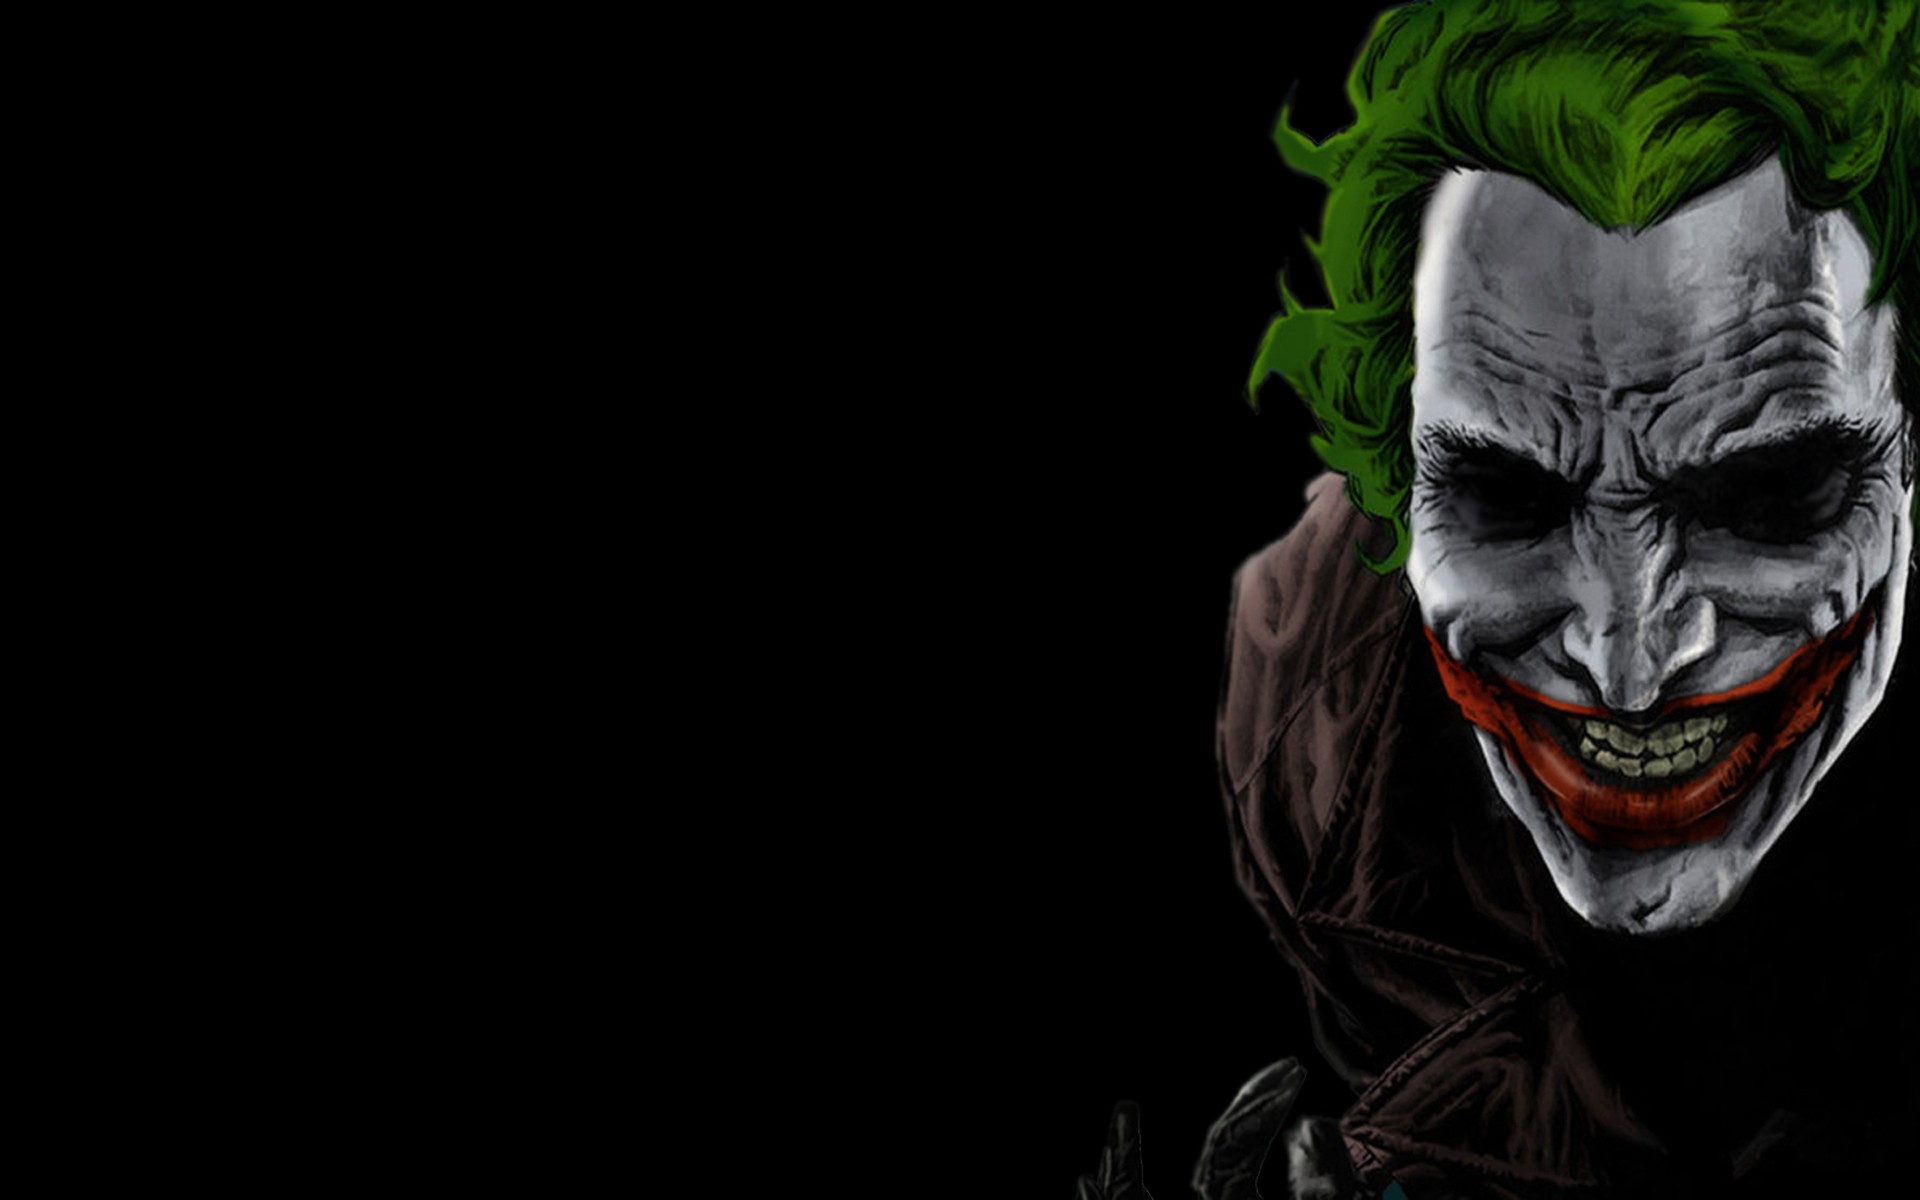 Wallpaper smile Joker black joker images for desktop section минимализм   download